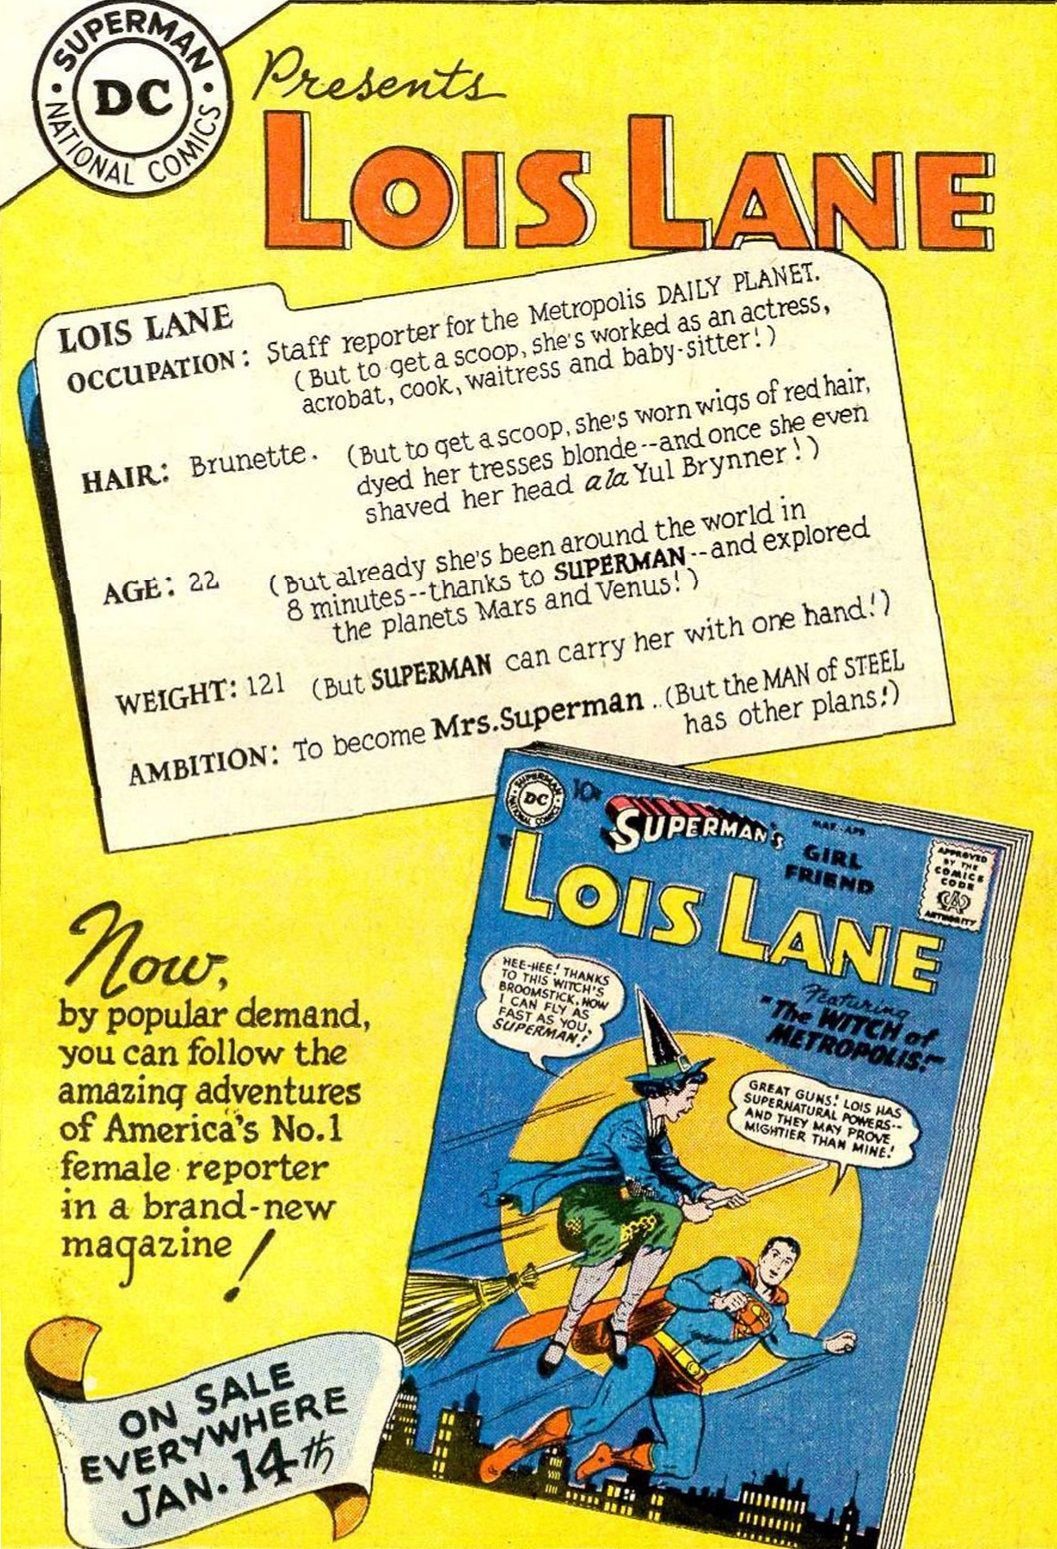 Kdo je starší, Superman nebo Lois Lane? (Je to komplikované)